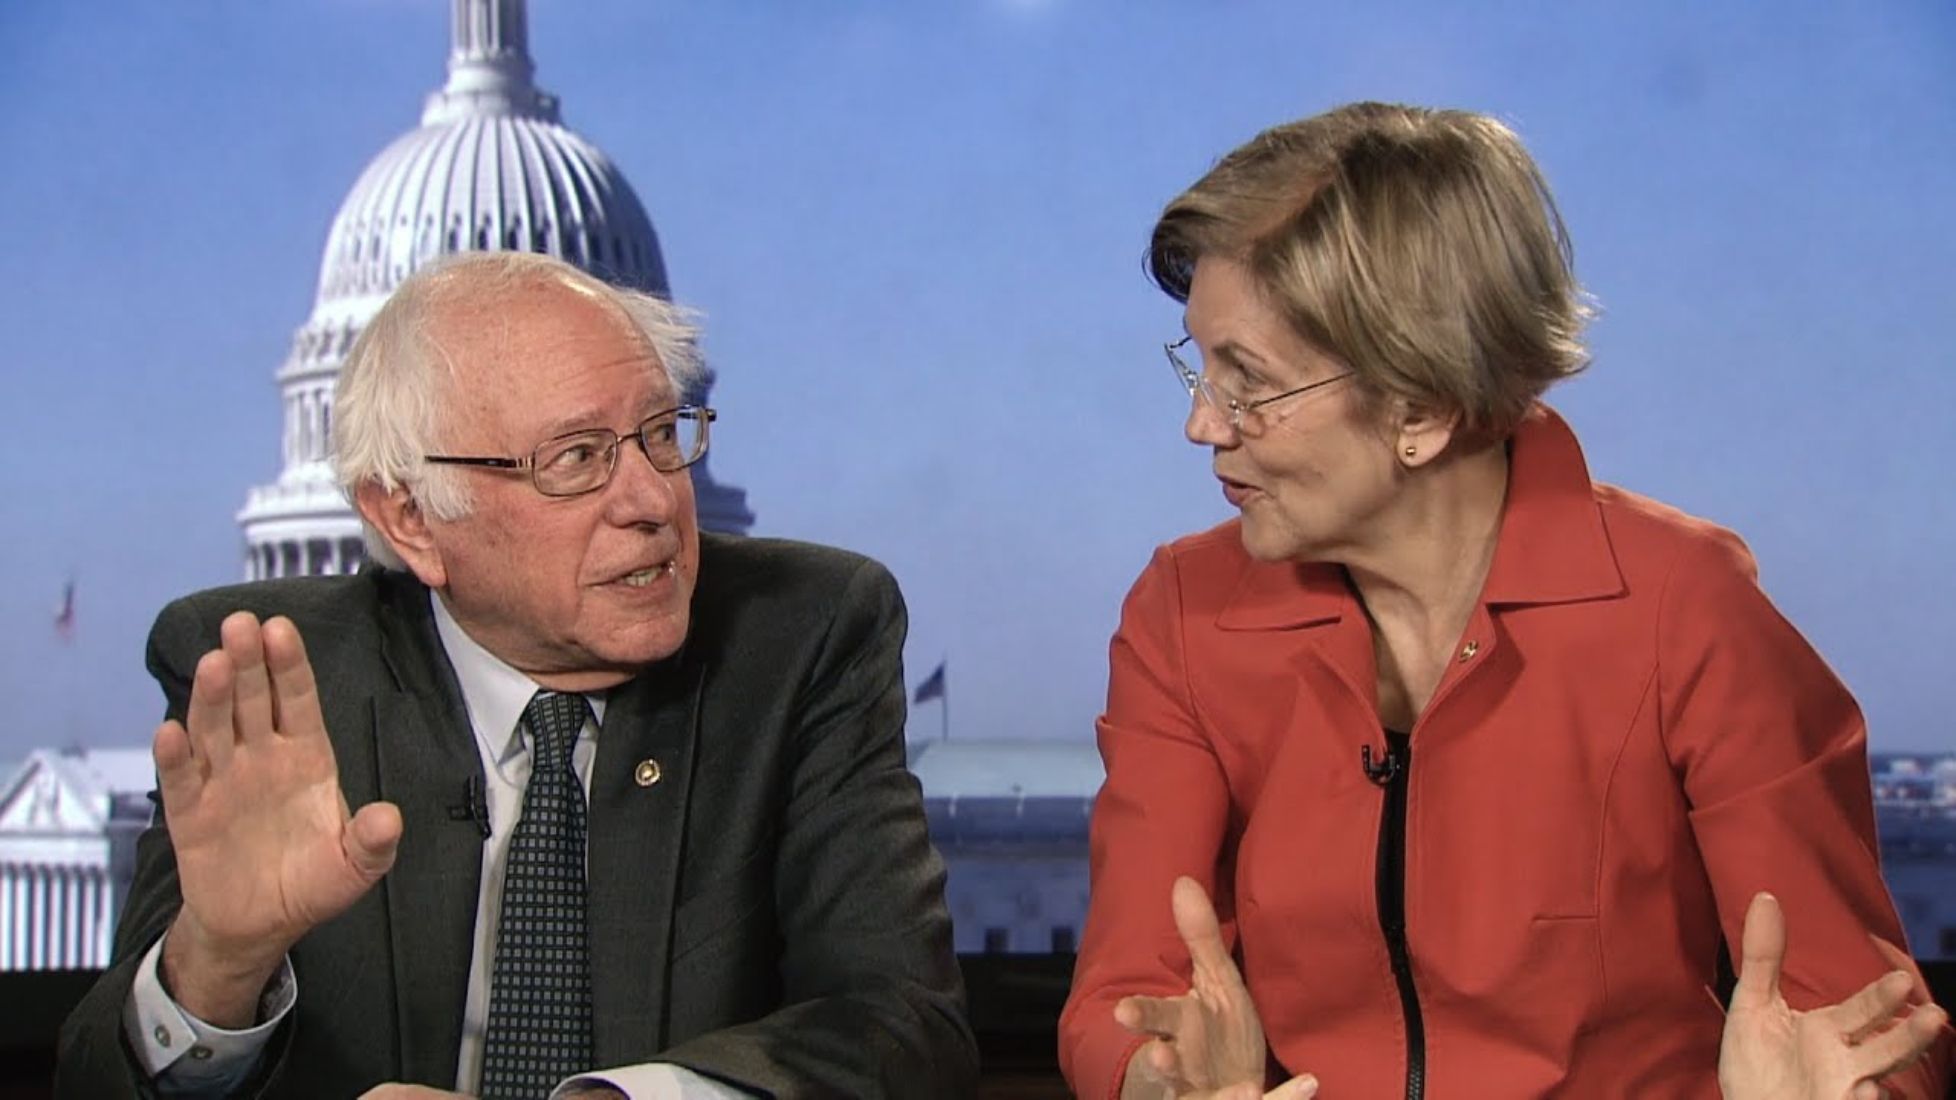 Los candidatos a las primarias demócratas Sanders y Warren en televisión (YouTube)